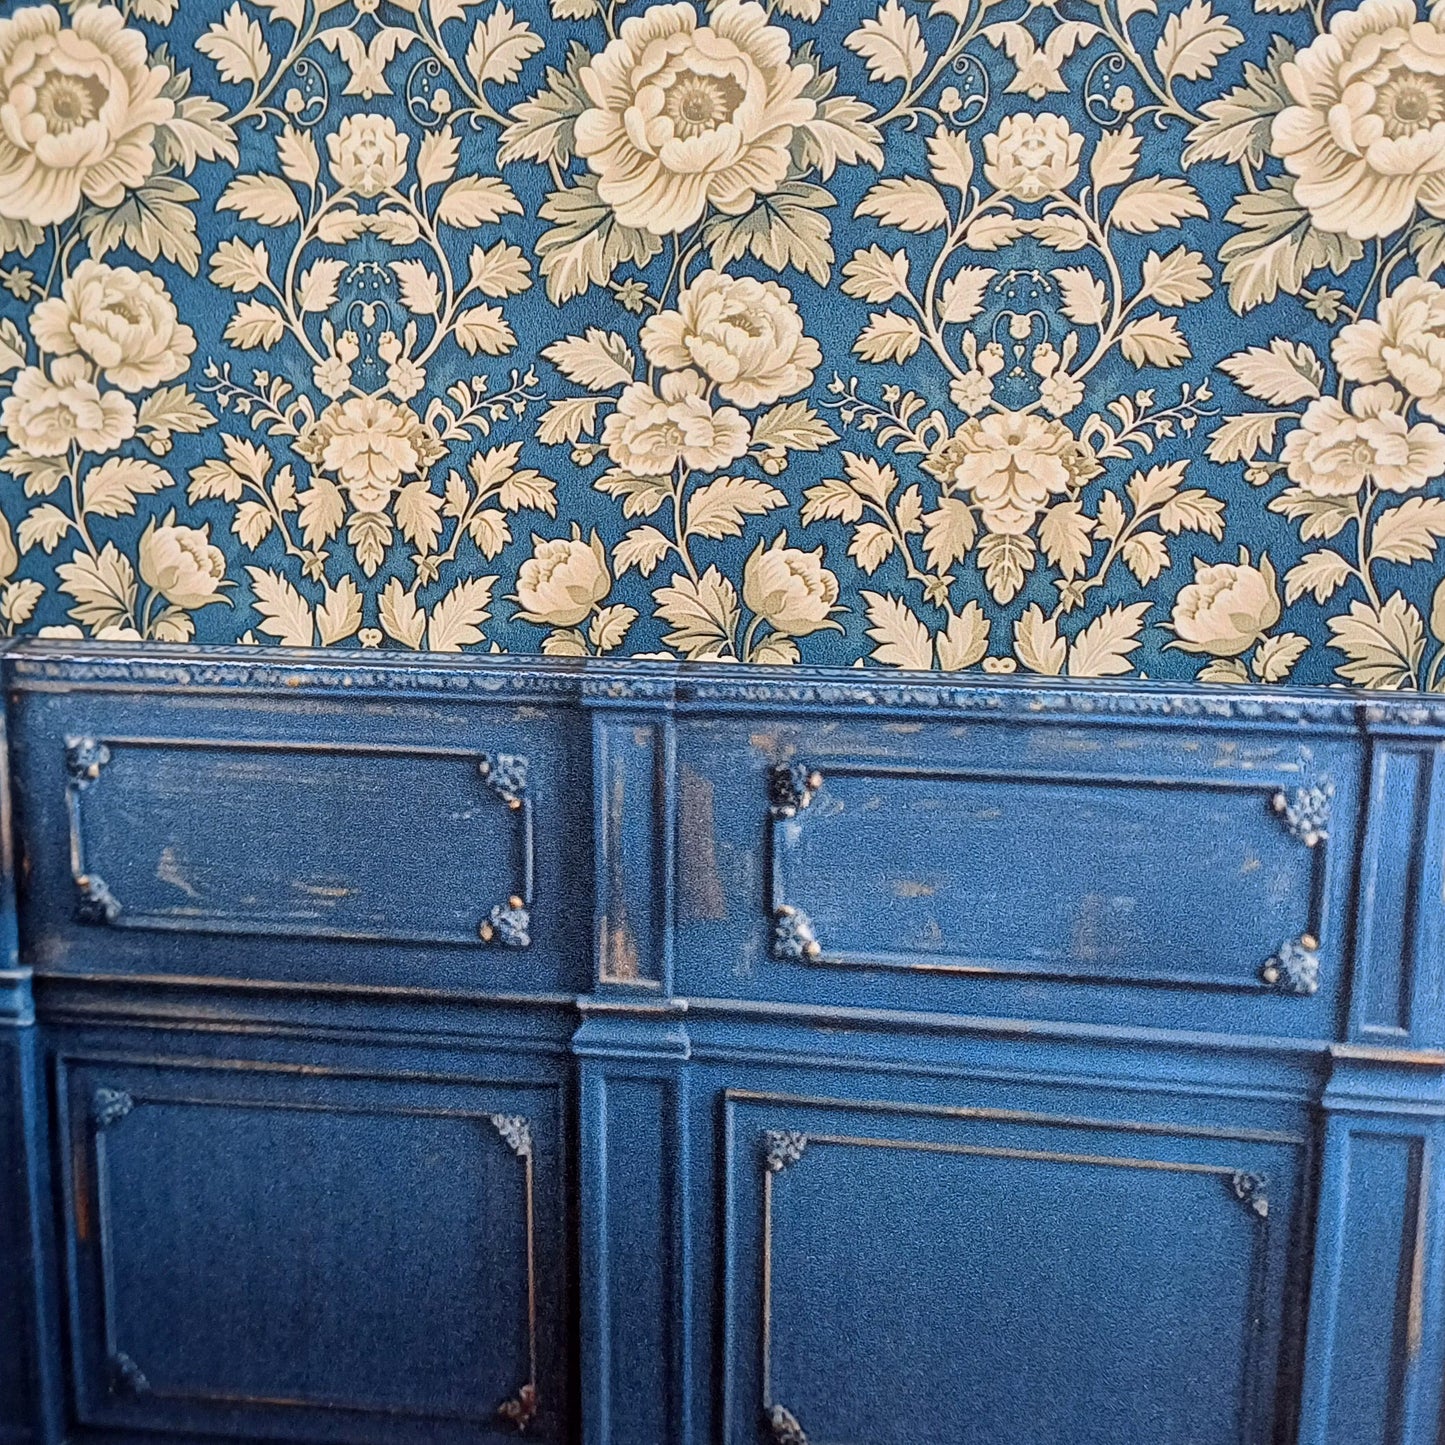 Diseño Roombox "Blue Room" escala 1:12 para impresión y artesanía